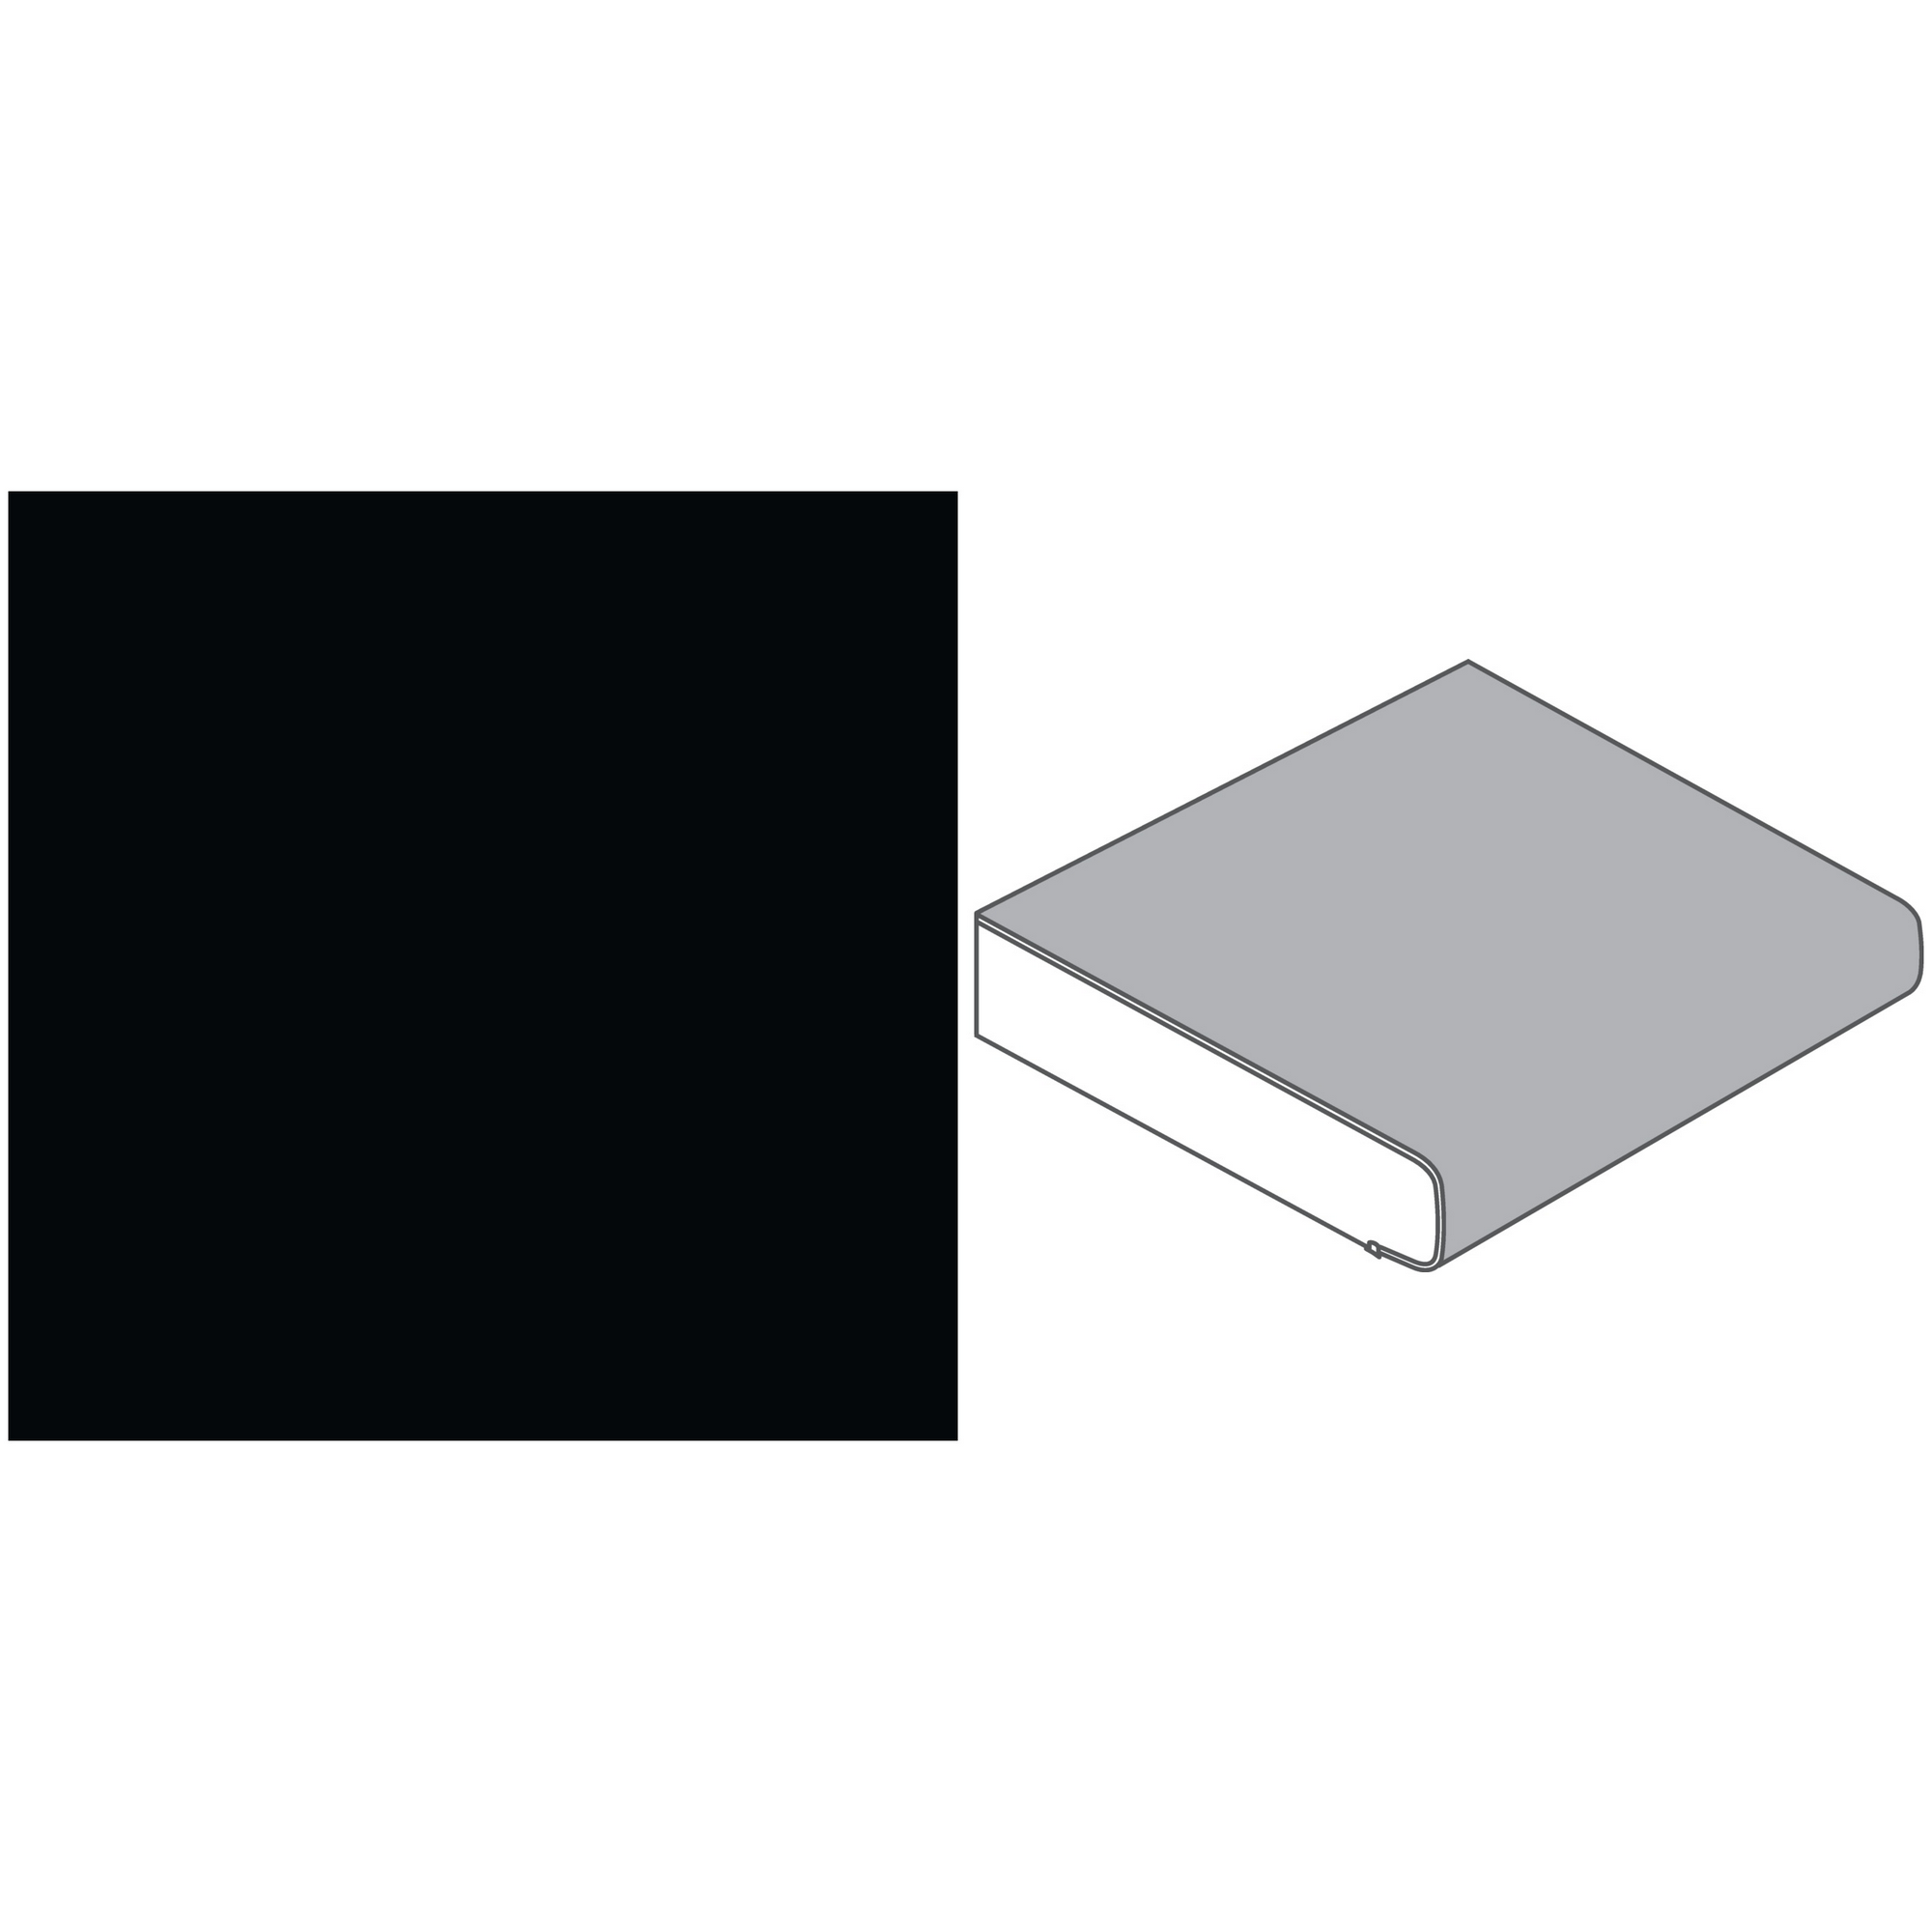 Küchenarbeitsplatte 'A1 CE' 410 x 60 x 3,9 cm schwarz + product picture